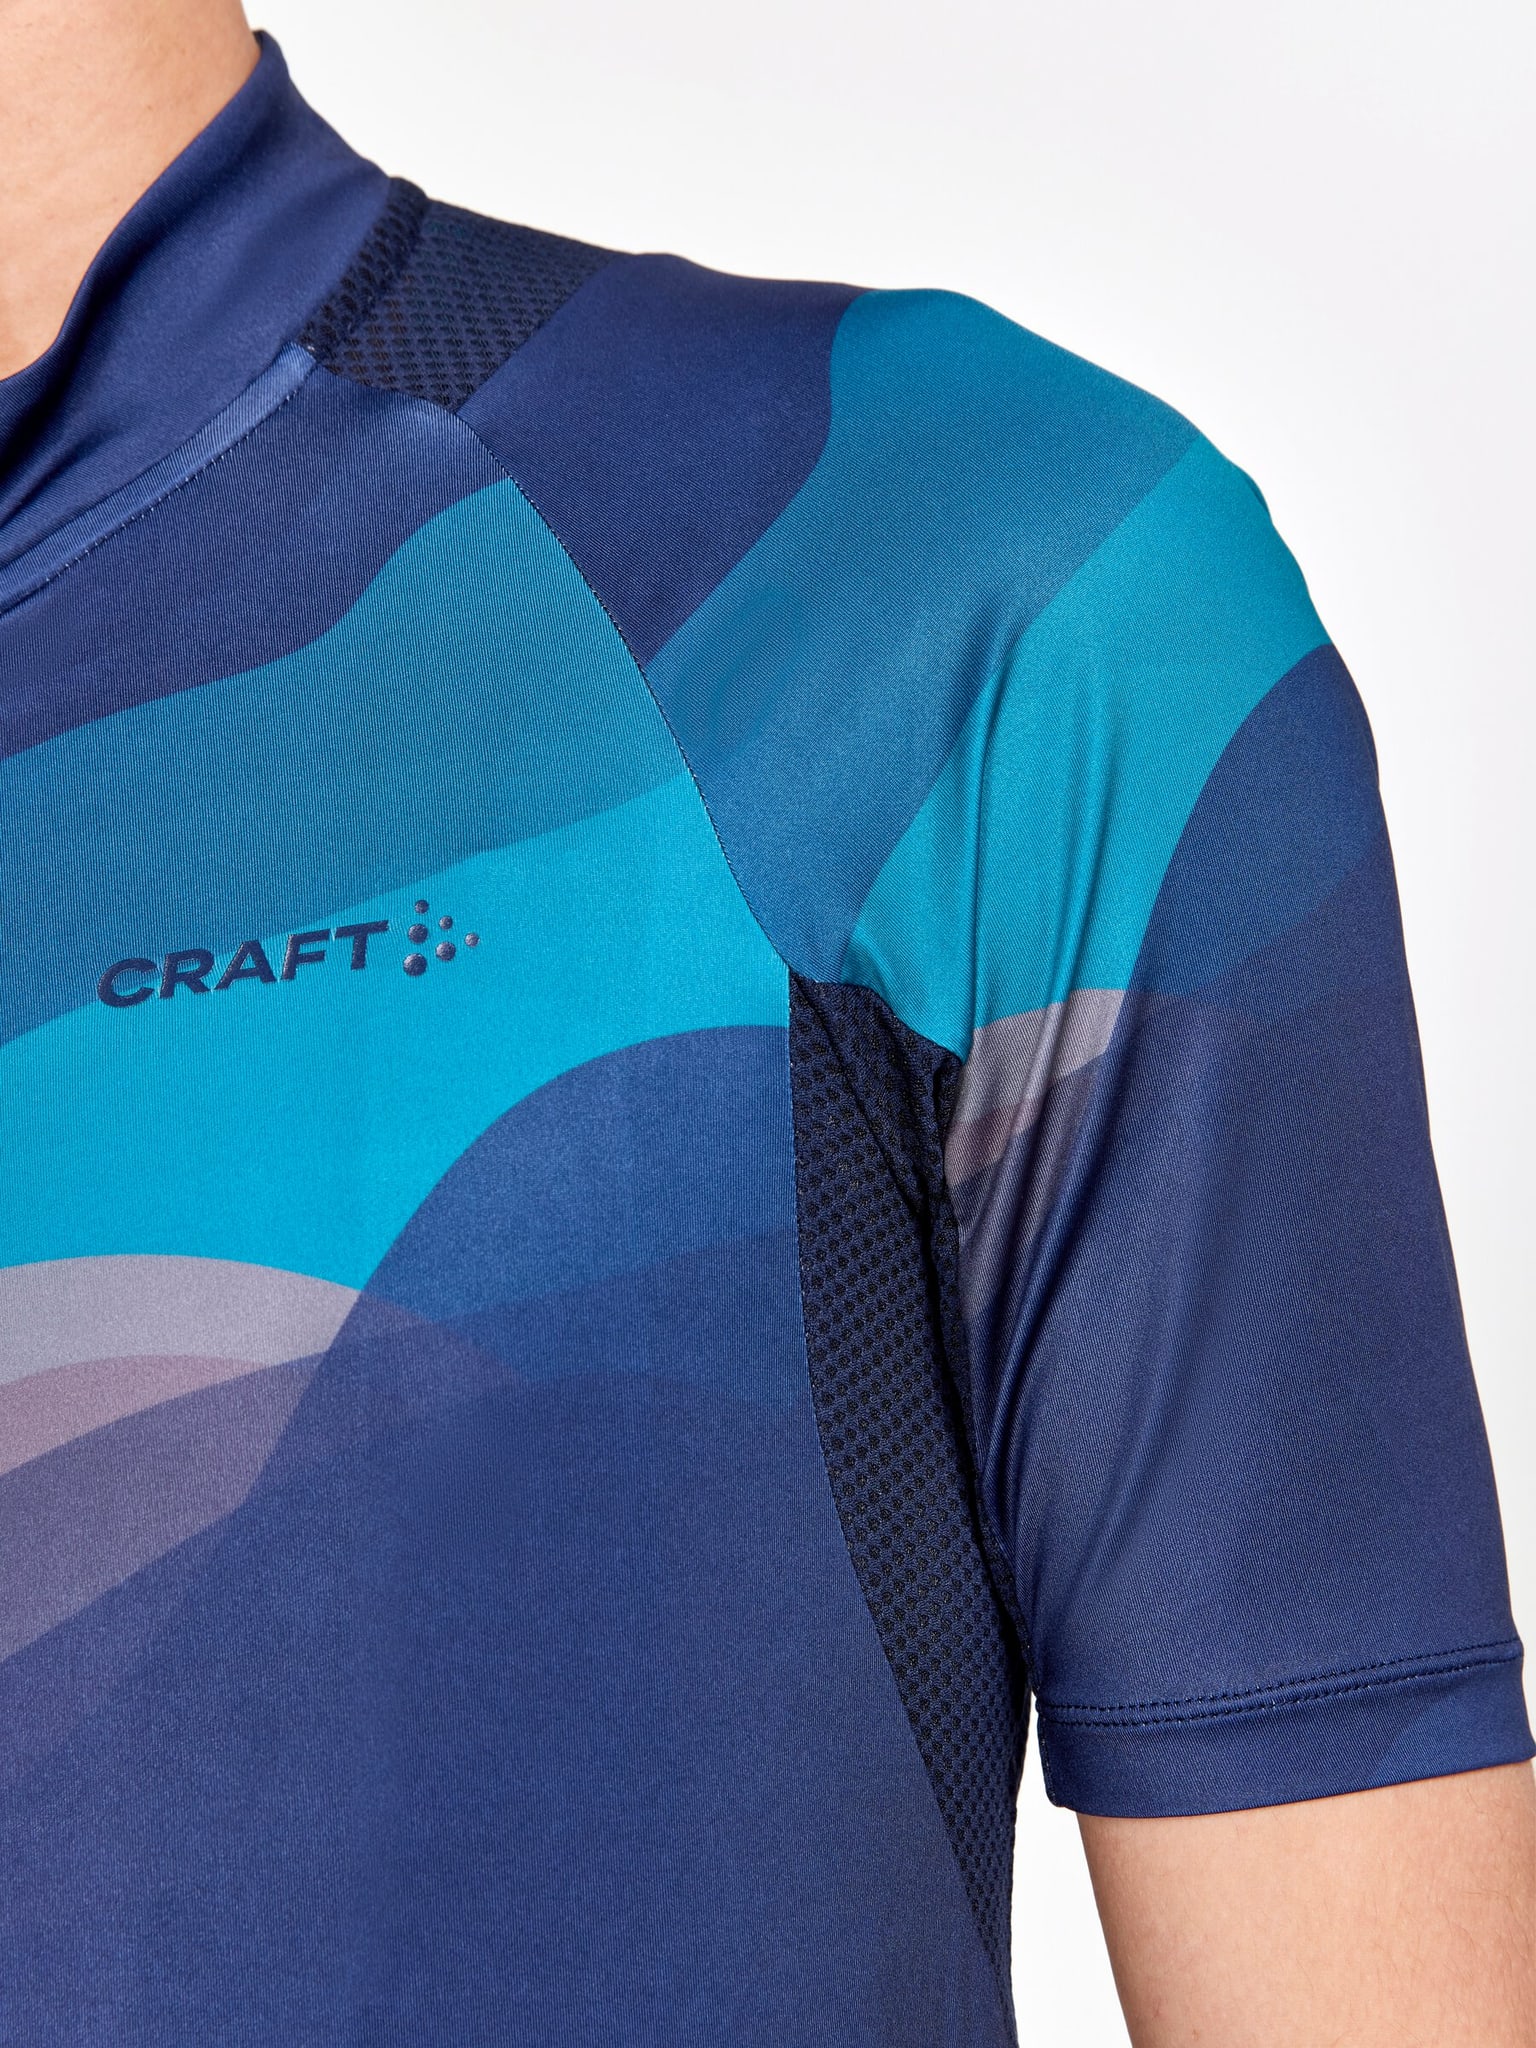 Craft Craft Adv Endur Graphic Jersey Bikeshirt blu-marino 4